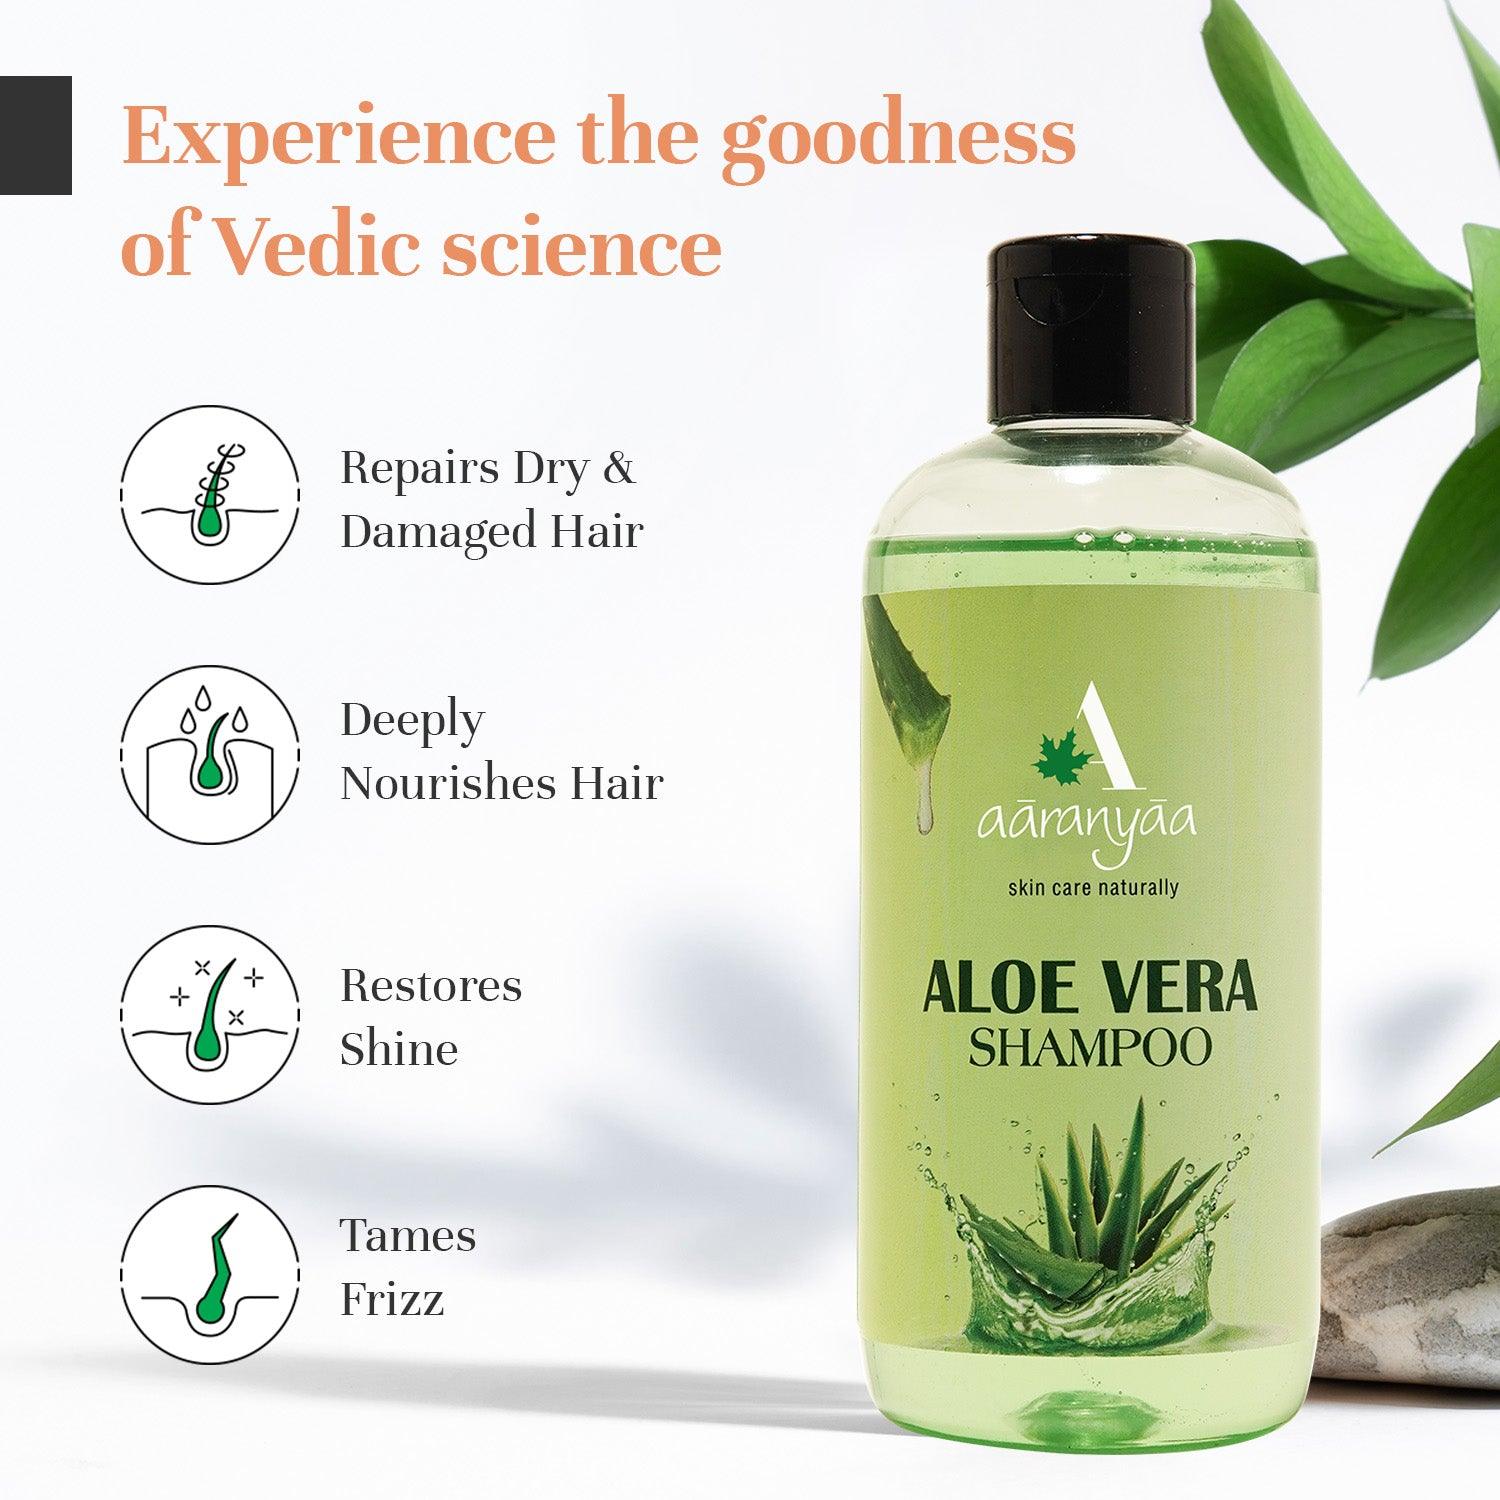 Aloevera Shampoo Experience the goodness